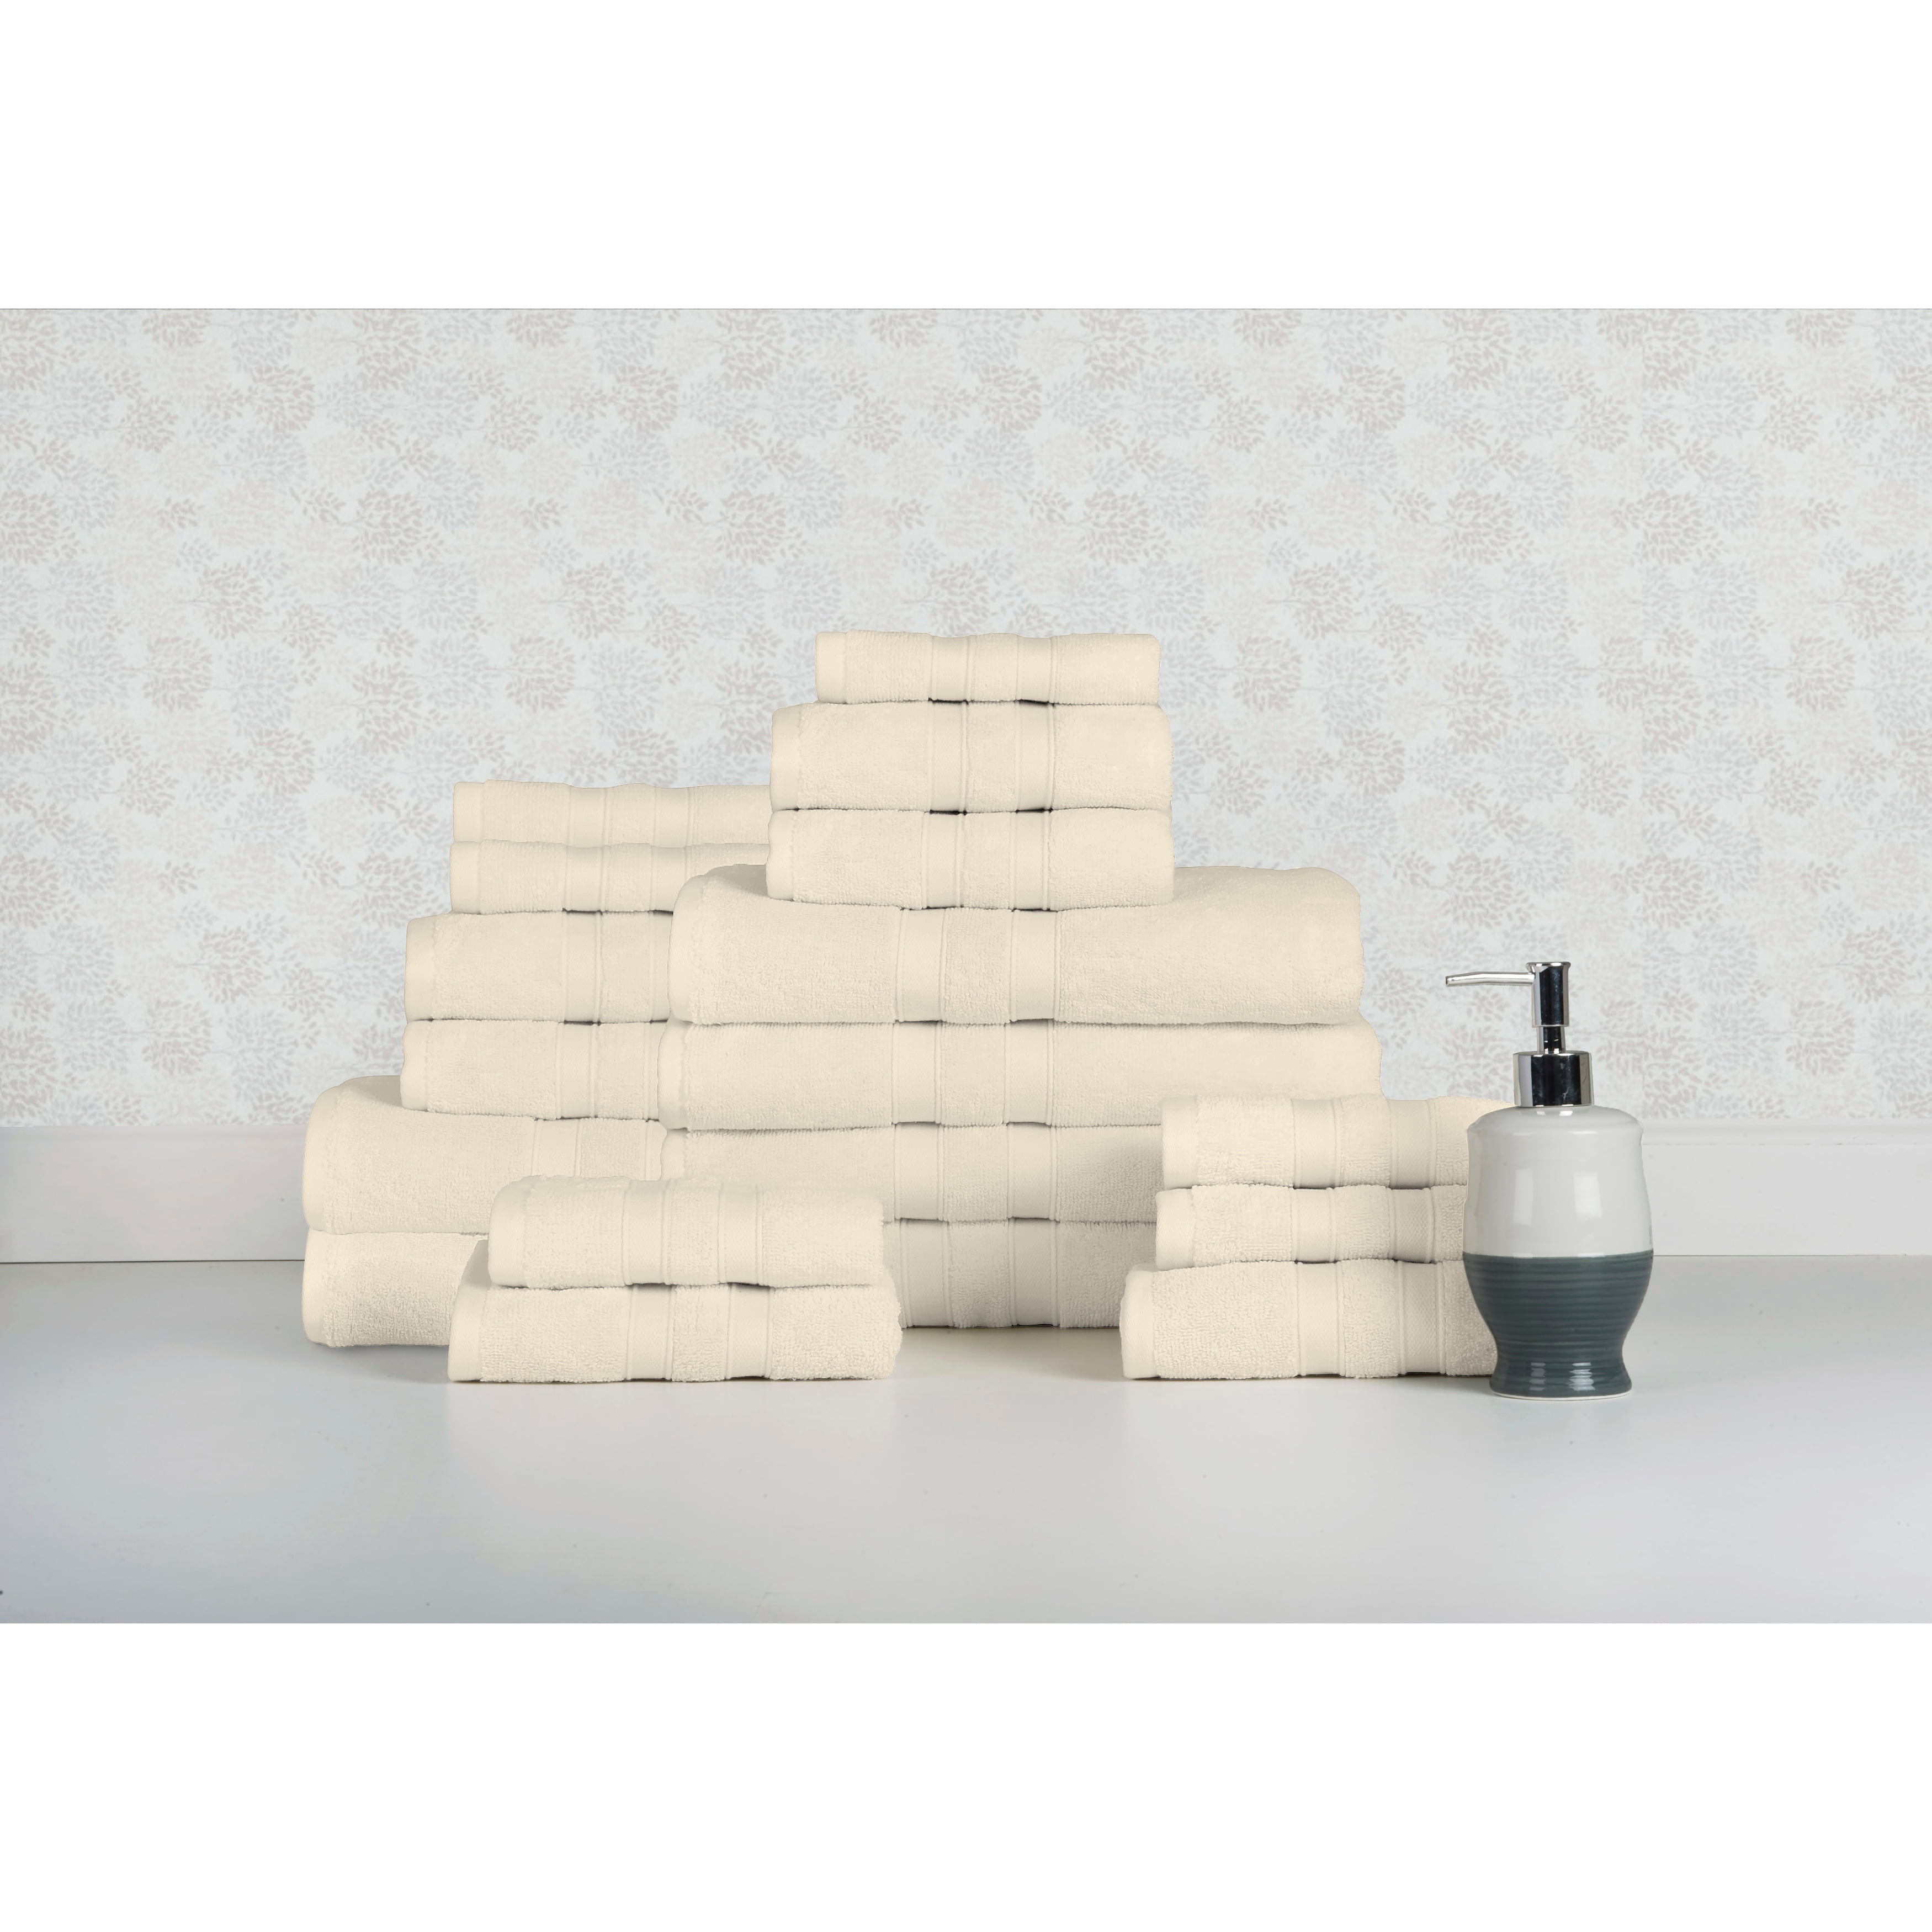 Bibb Home 100% Cotton 6-Piece Towel Set